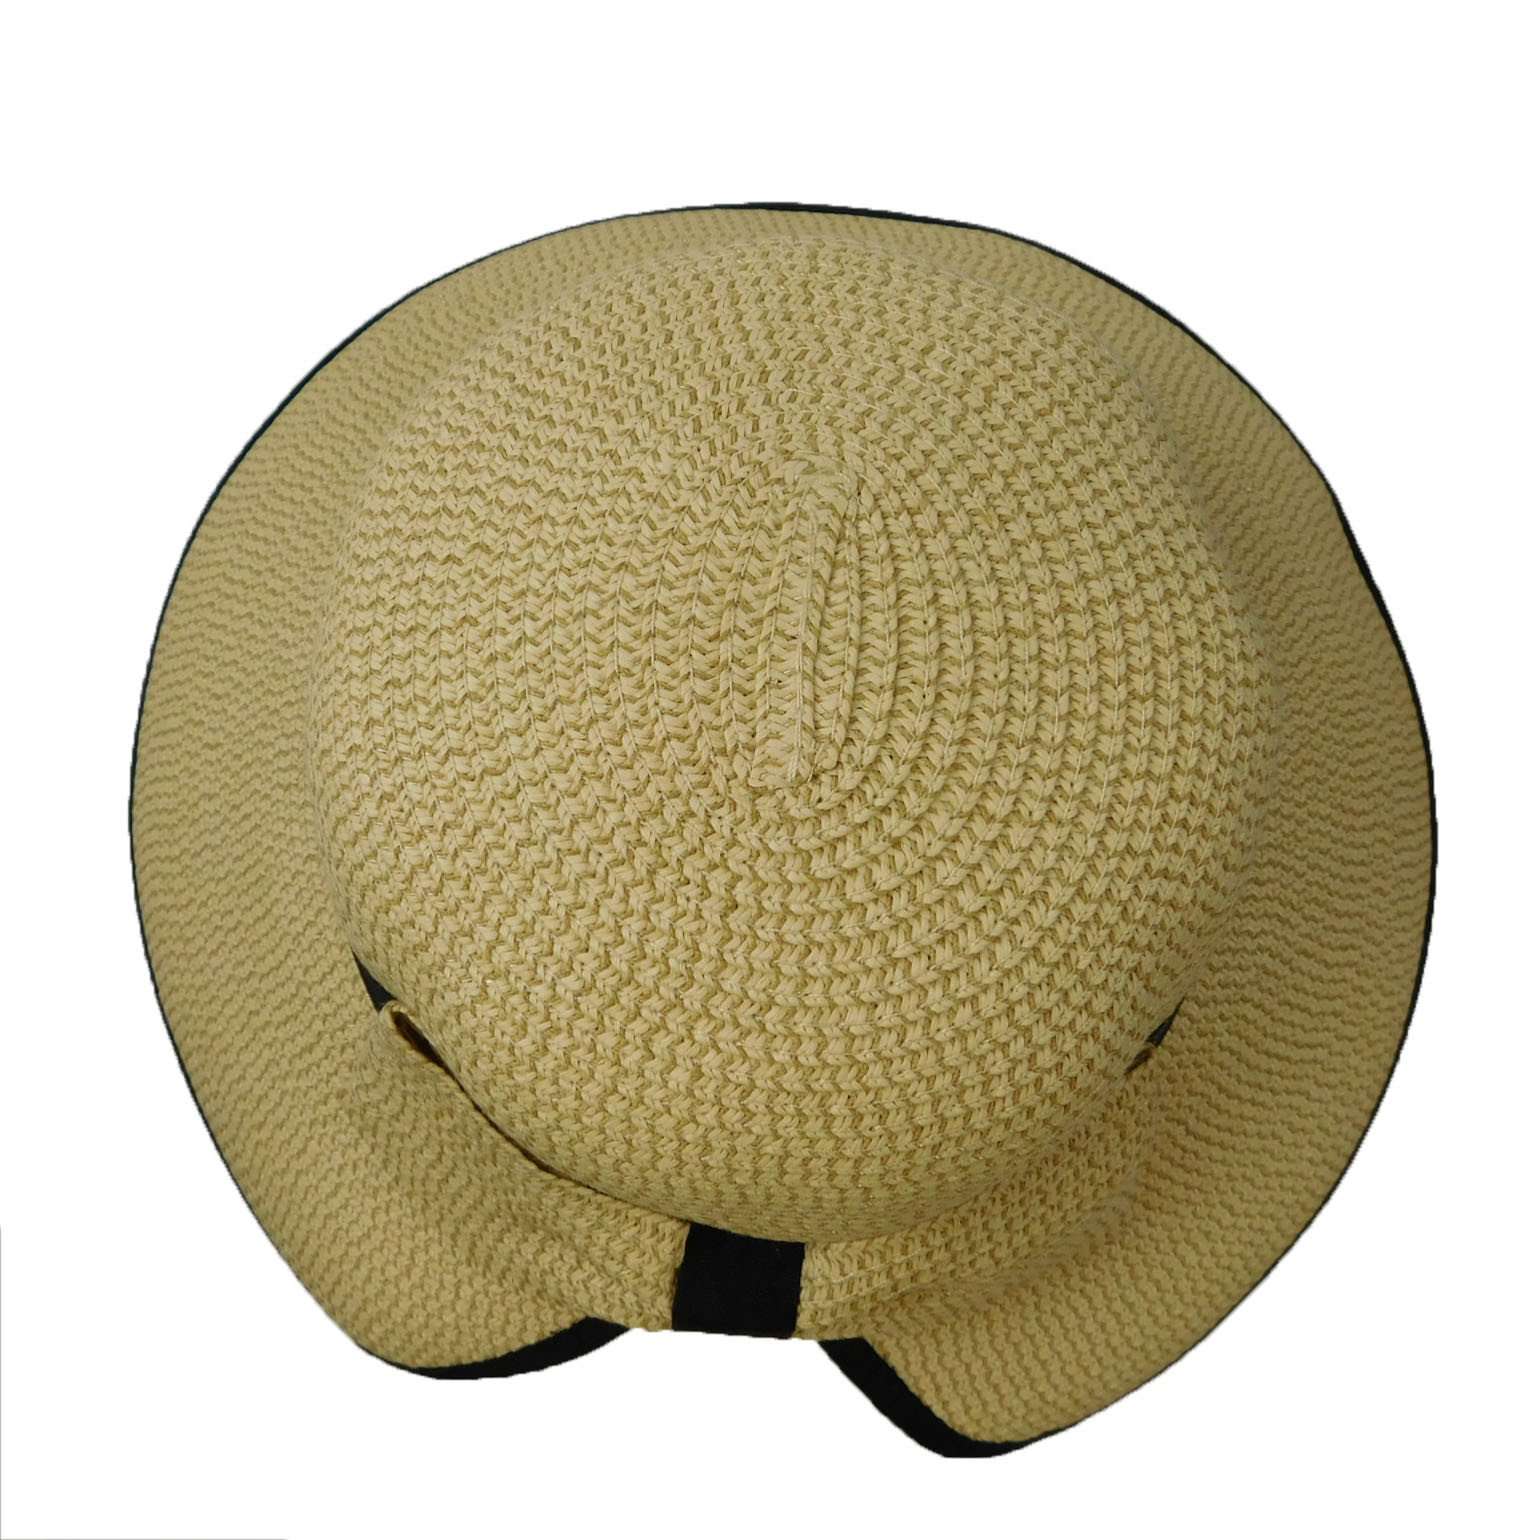 Big Brim Hat with V-Cut Back - Boardwalk Style, Wide Brim Hat - SetarTrading Hats 